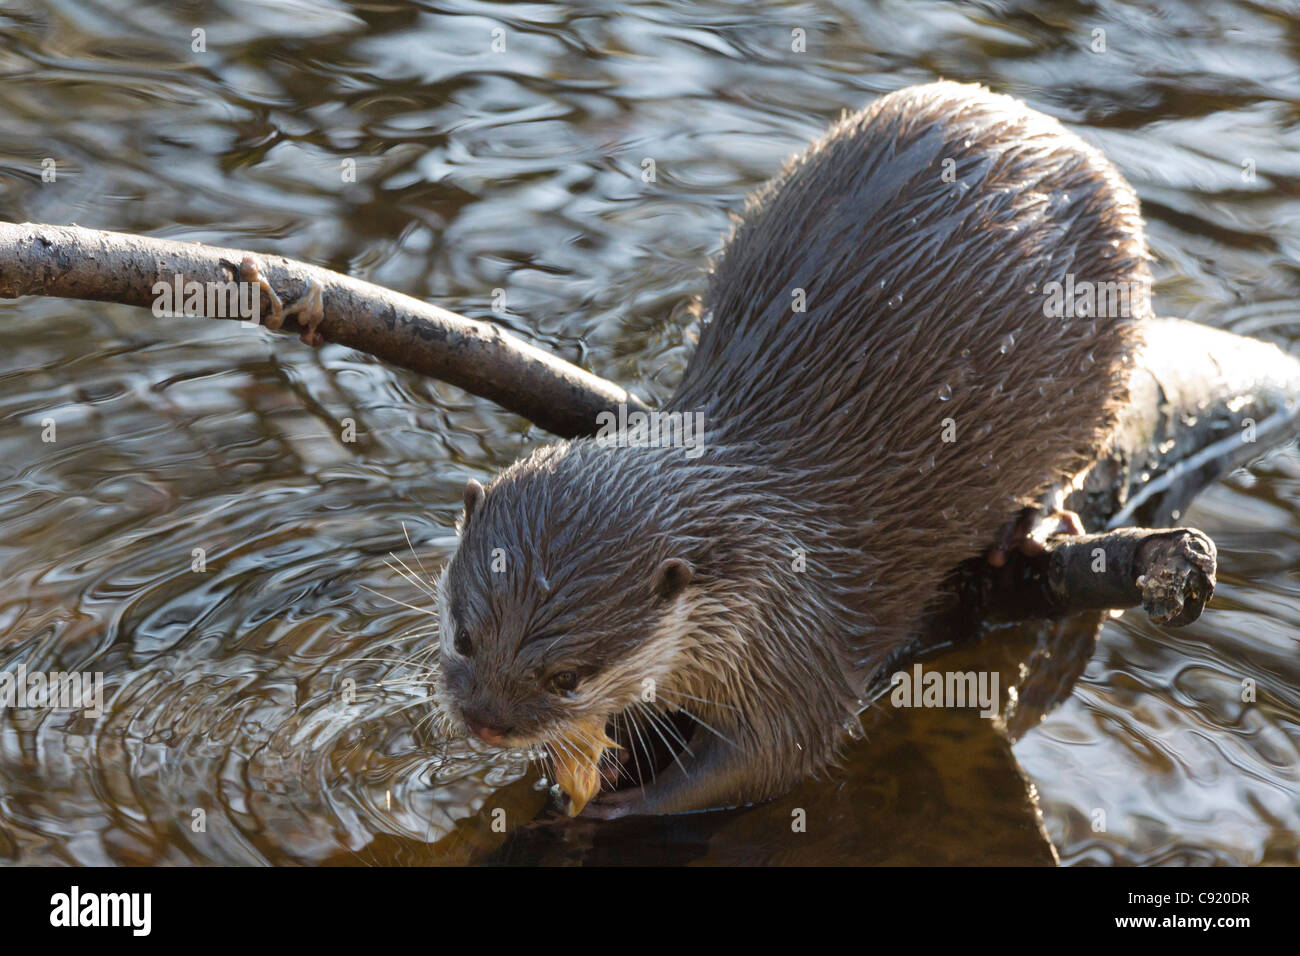 Edinburgh Zoo, Schottland - Aonyx Cinerea, orientalische oder asiatische kleine krallte otter Stockfoto